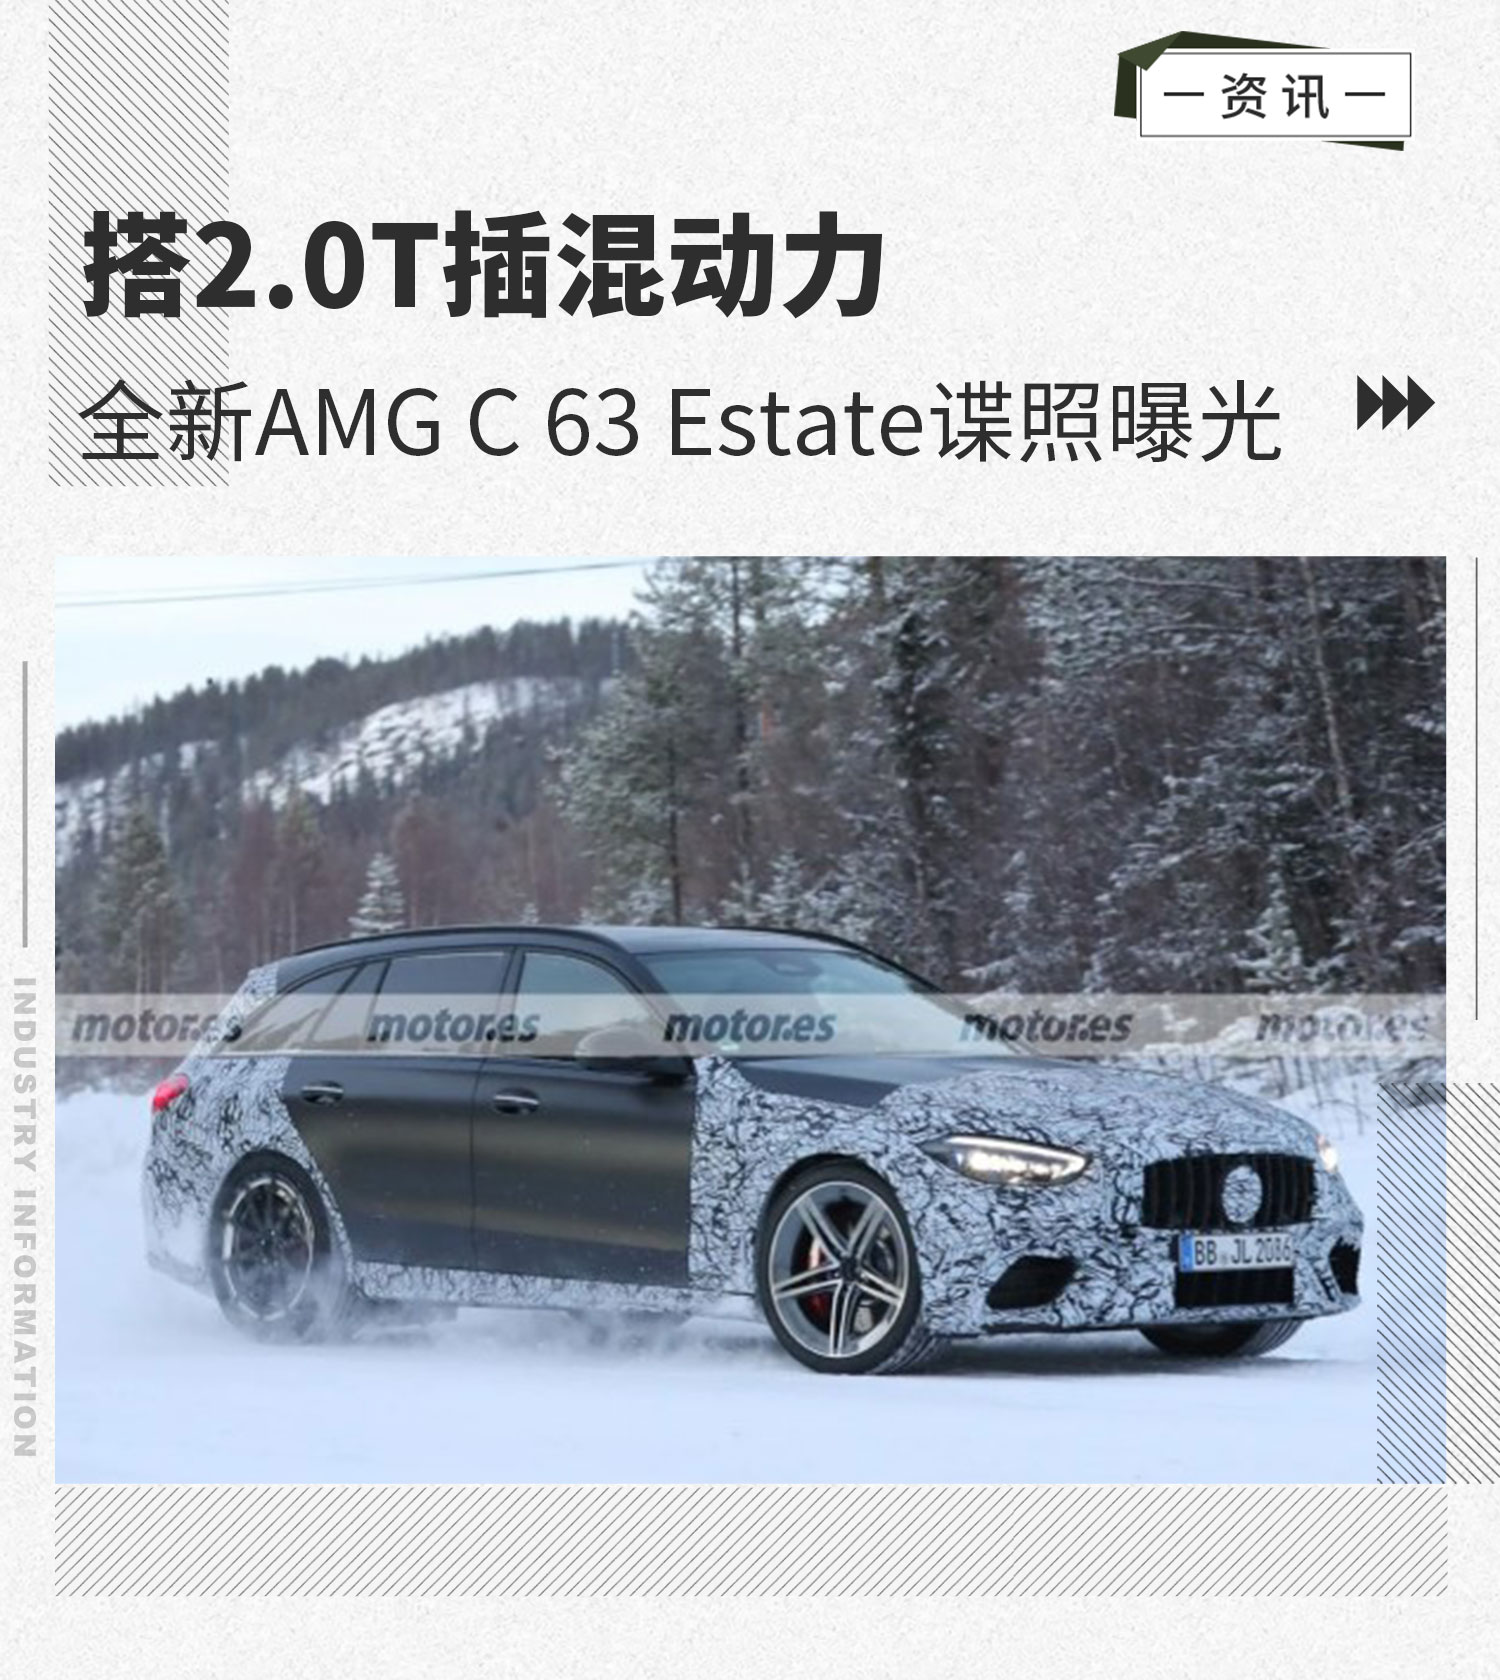 搭2.0T插混动力 全新AMG C63 Estate谍照曝光